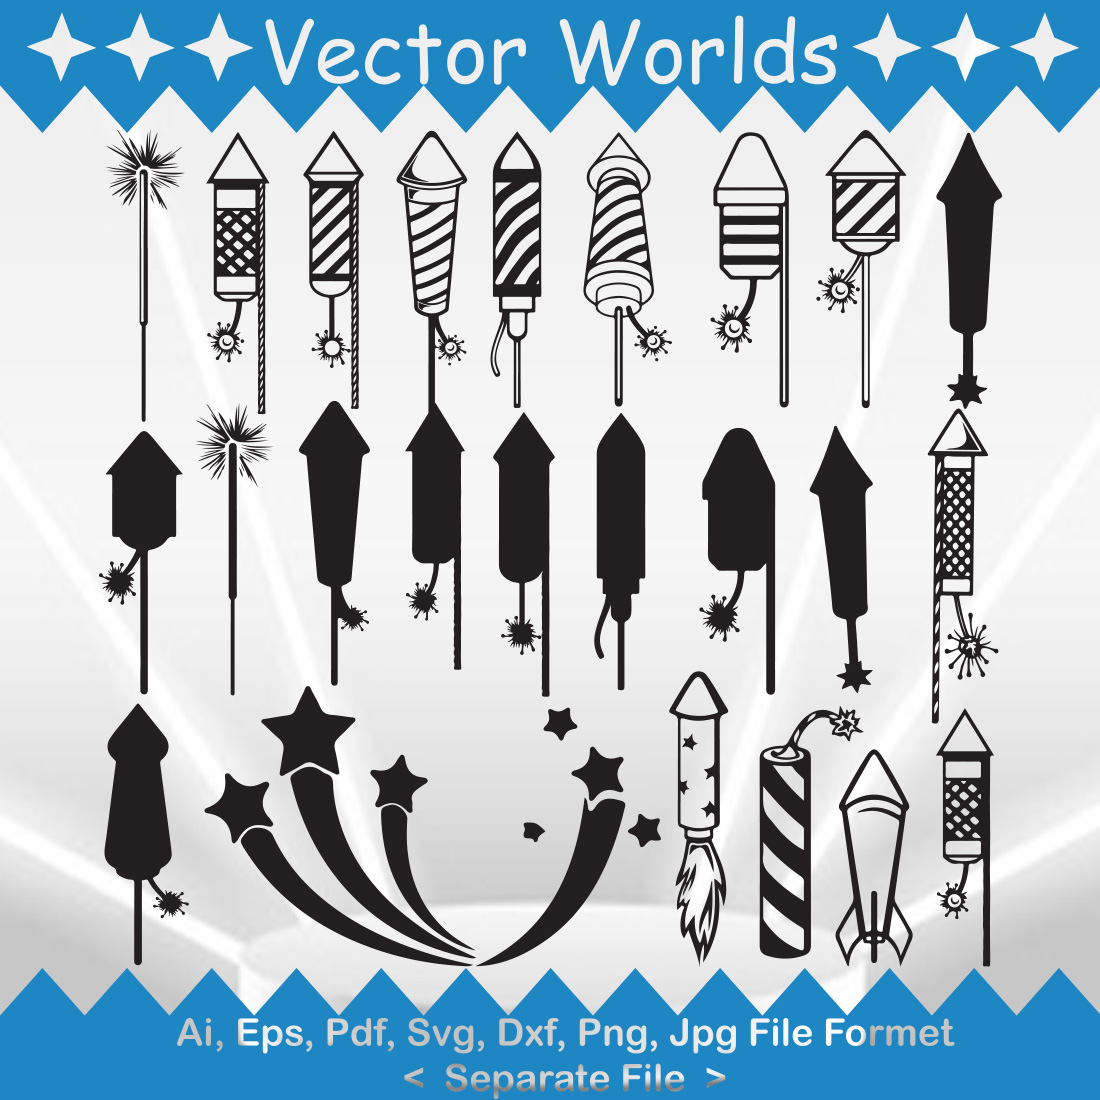 Fireworks Rocket SVG Vector Design main image.